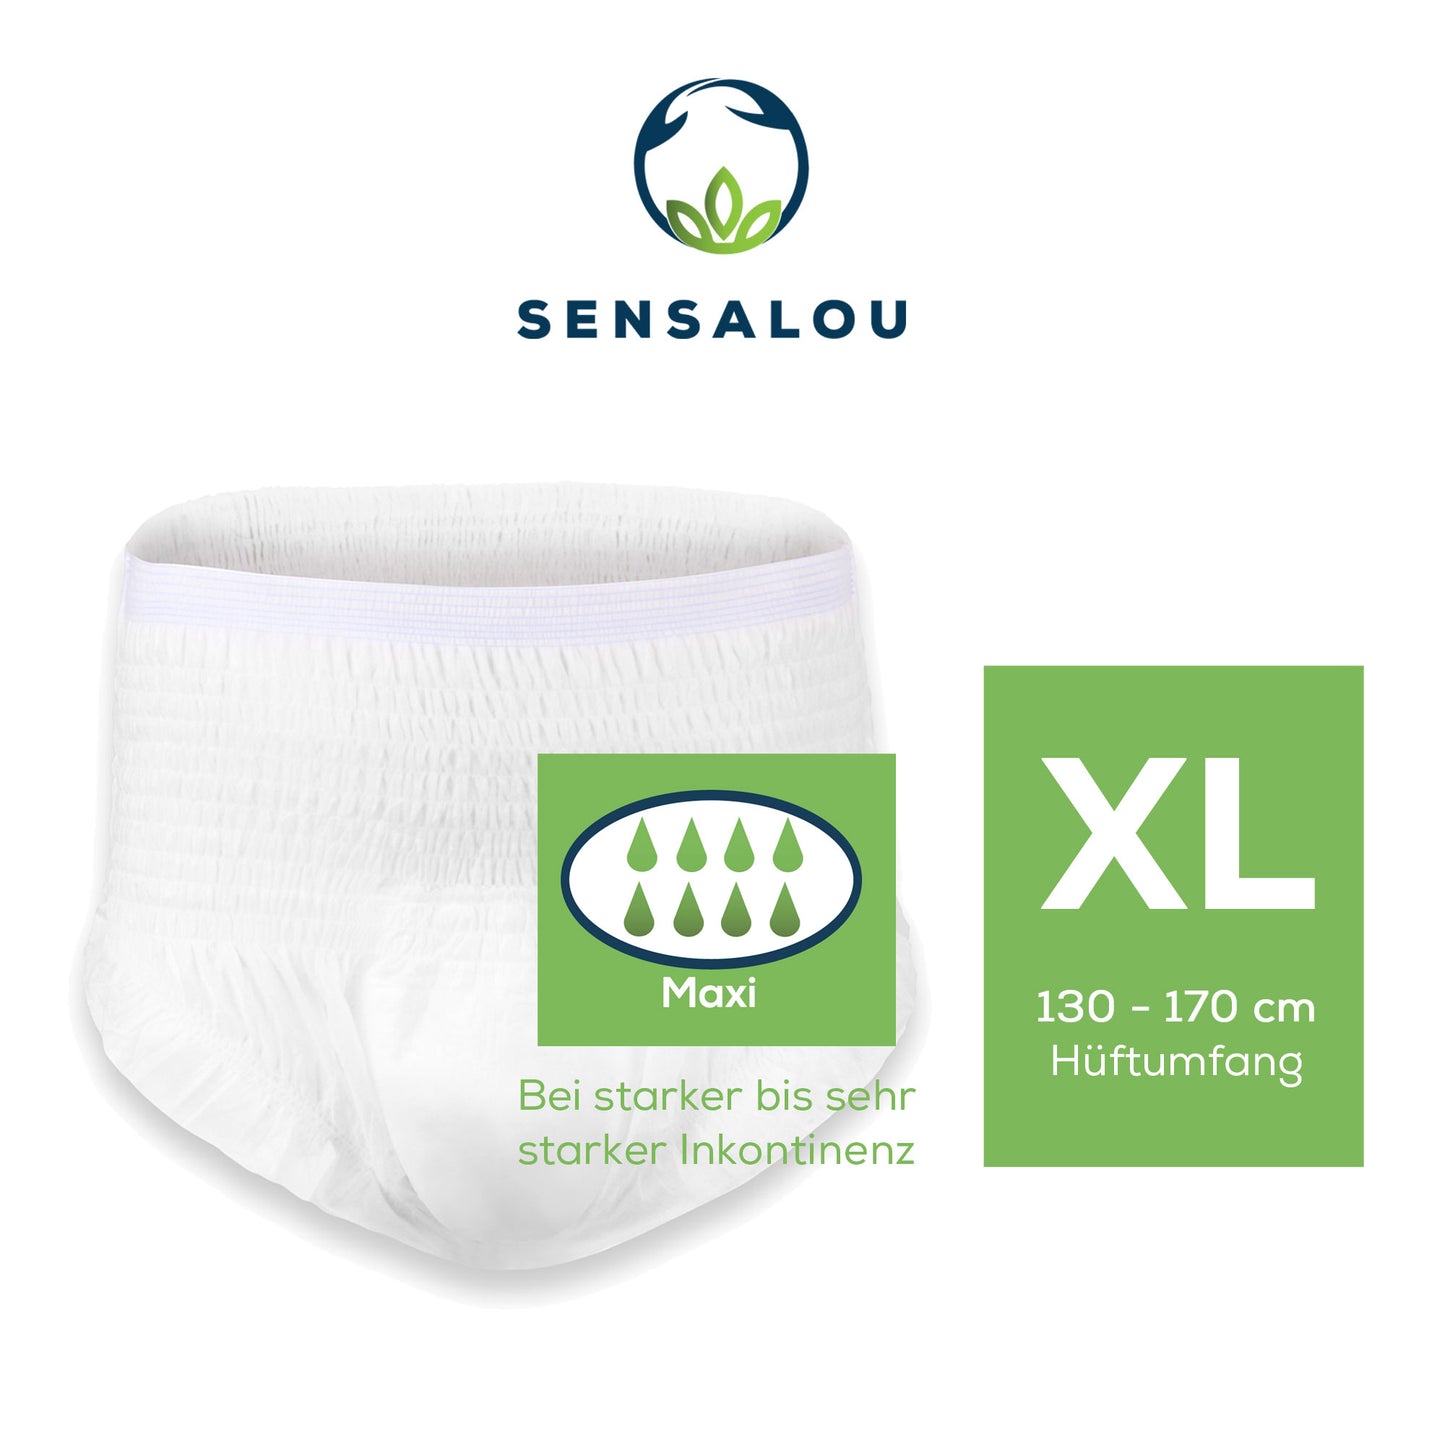 Test des pantalons à couches Sensalou en taille du paquet. M, L, XL